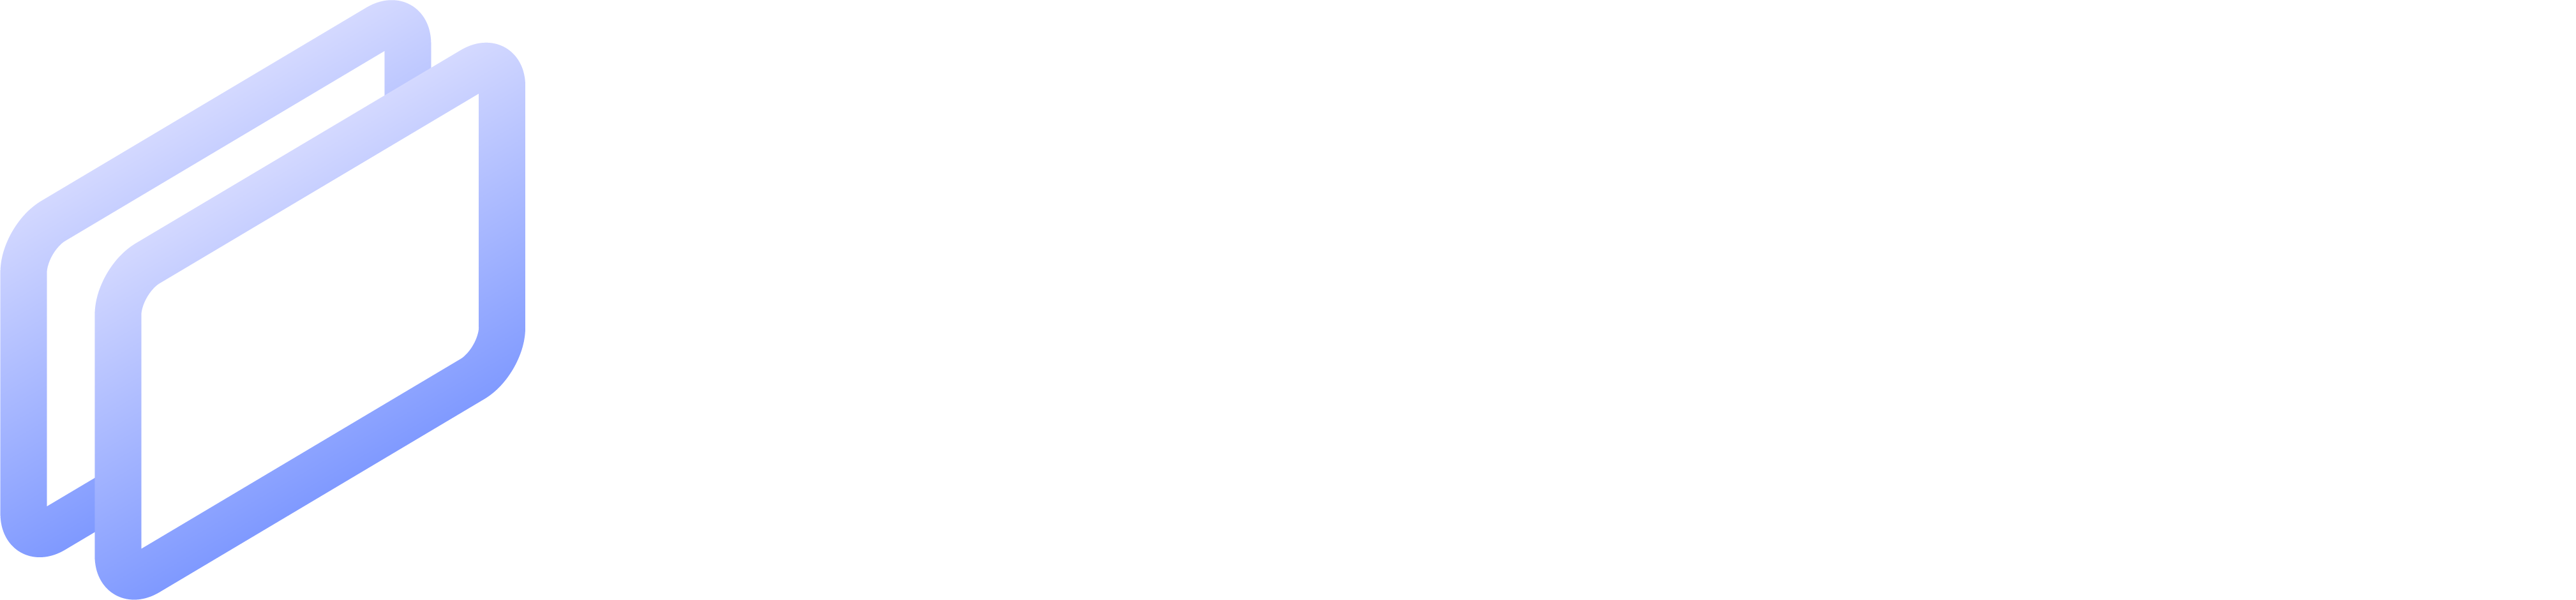 Coframe Logo